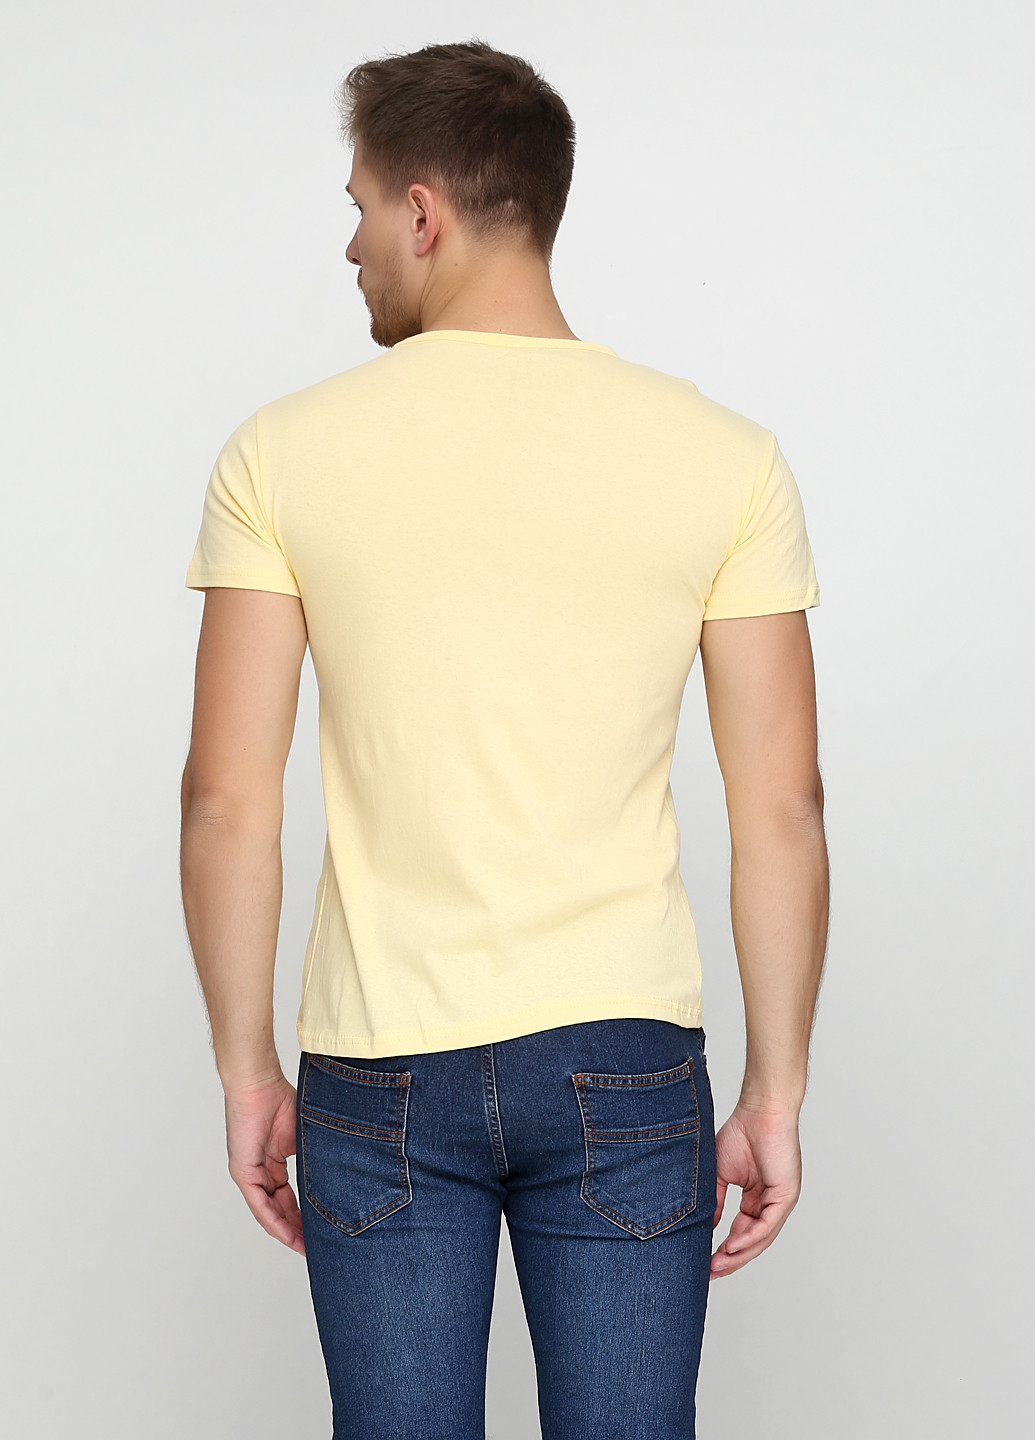 Желтая футболка LEXSUS